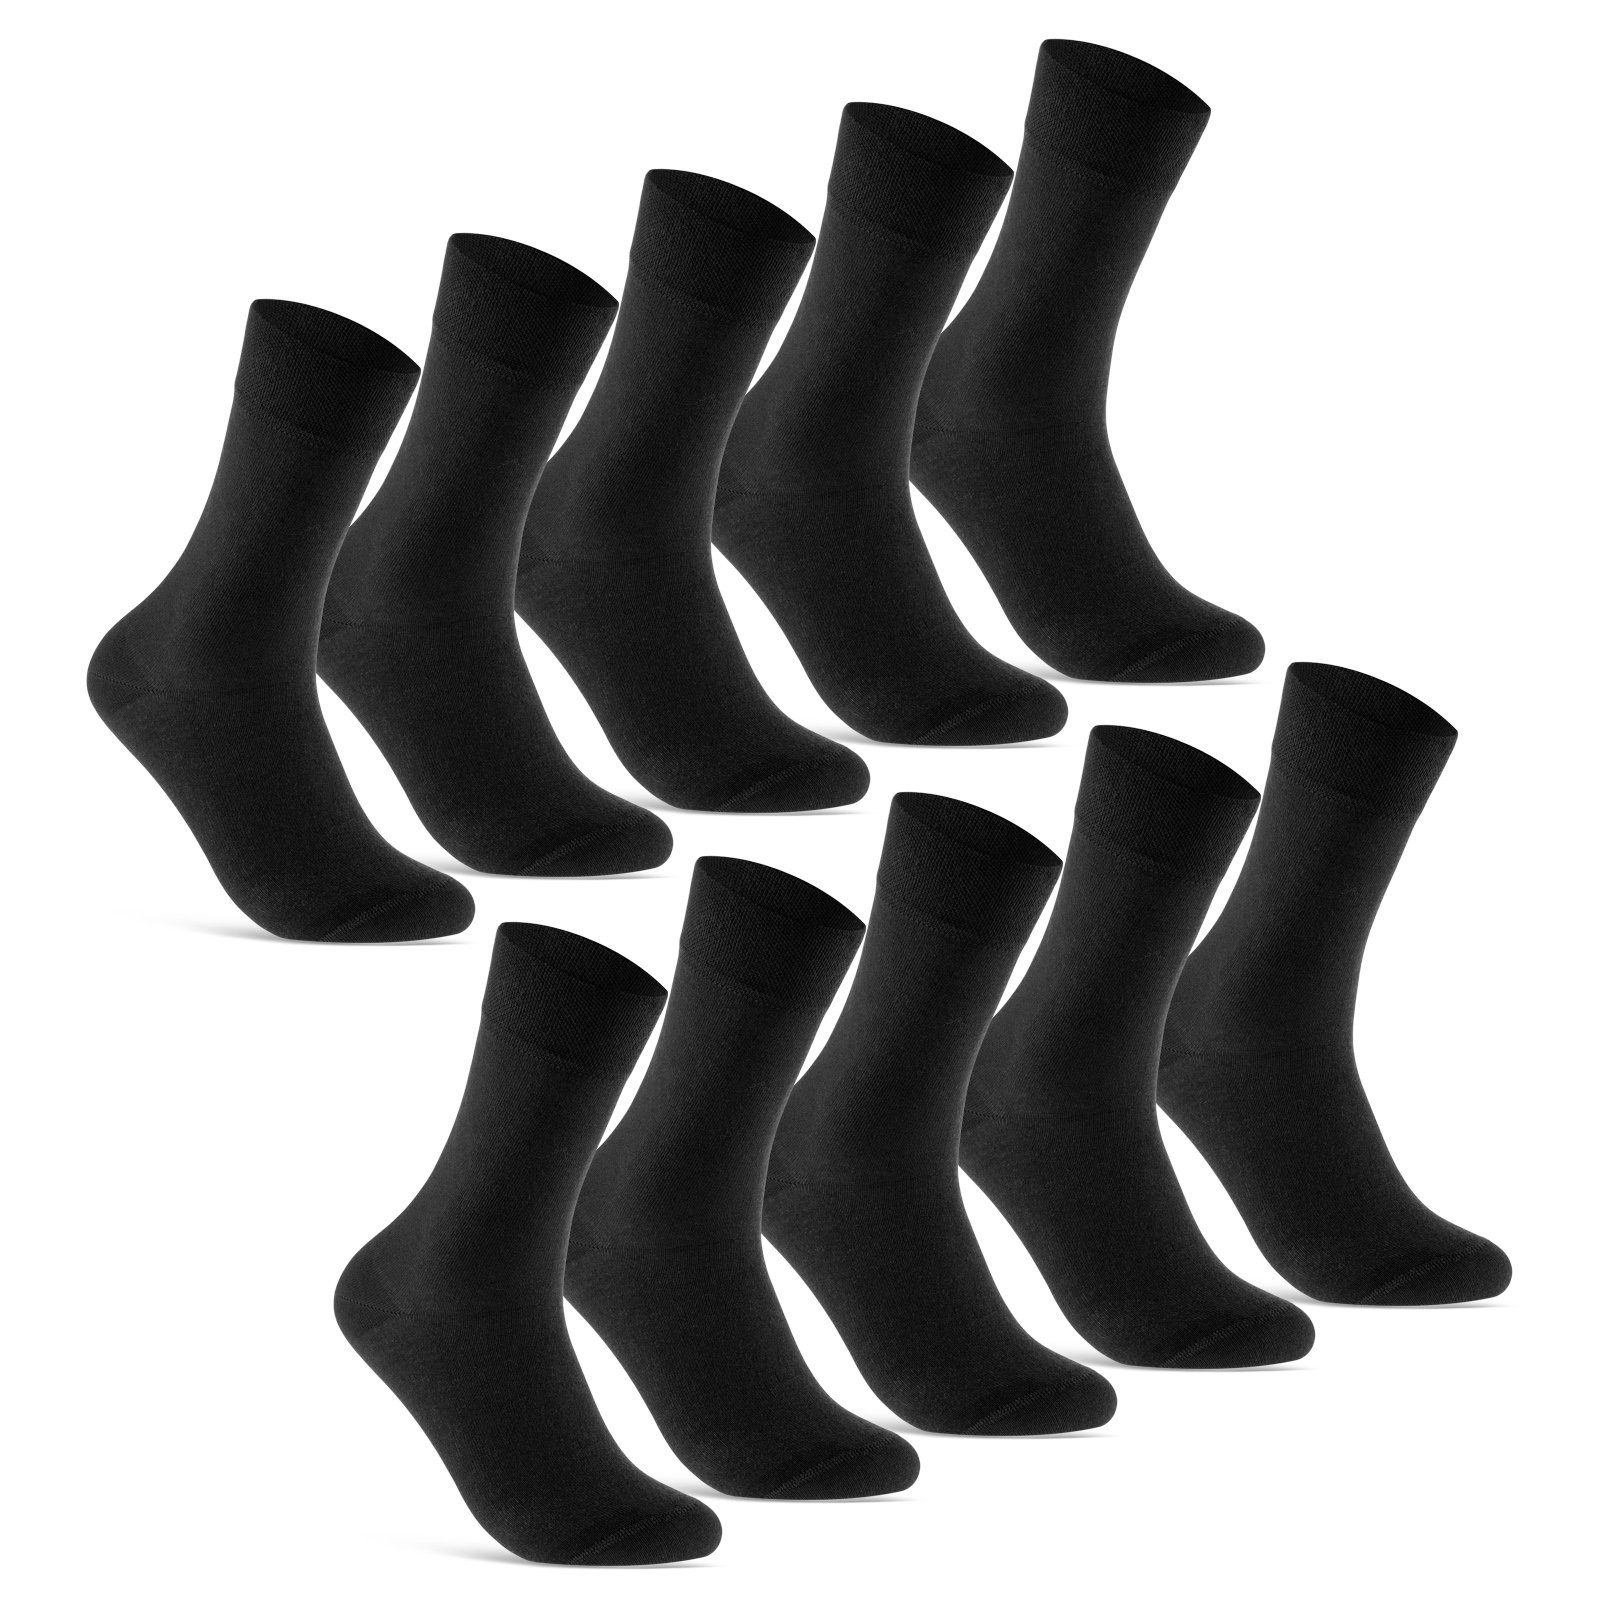 sockenkauf24 Socken 10 Paar Premium Socken Herren & Damen Komfort Business-Socken (Schwarz, 10-Paar, 43-46) aus gekämmter Baumwolle mit Pique-Bund (Exclusive Line) - 70101T WP